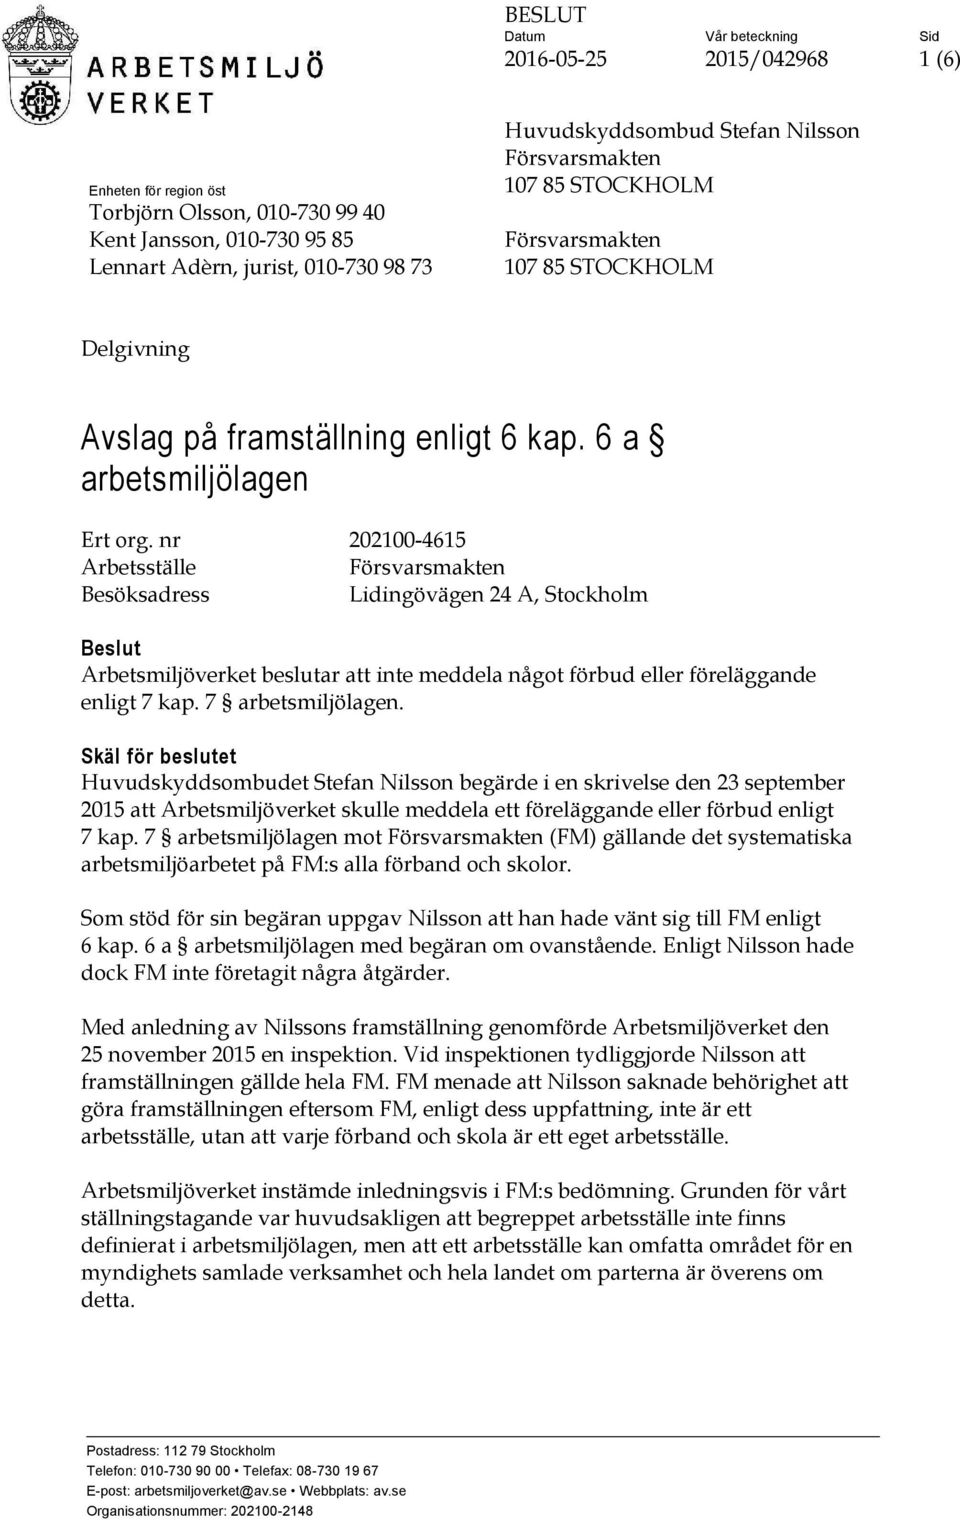 nr 202100-4615 Arbetsställe Försvarsmakten Besöksadress Lidingövägen 24 A, Stockholm Beslut Arbetsmiljöverket beslutar att inte meddela något förbud eller föreläggande enligt 7 kap.